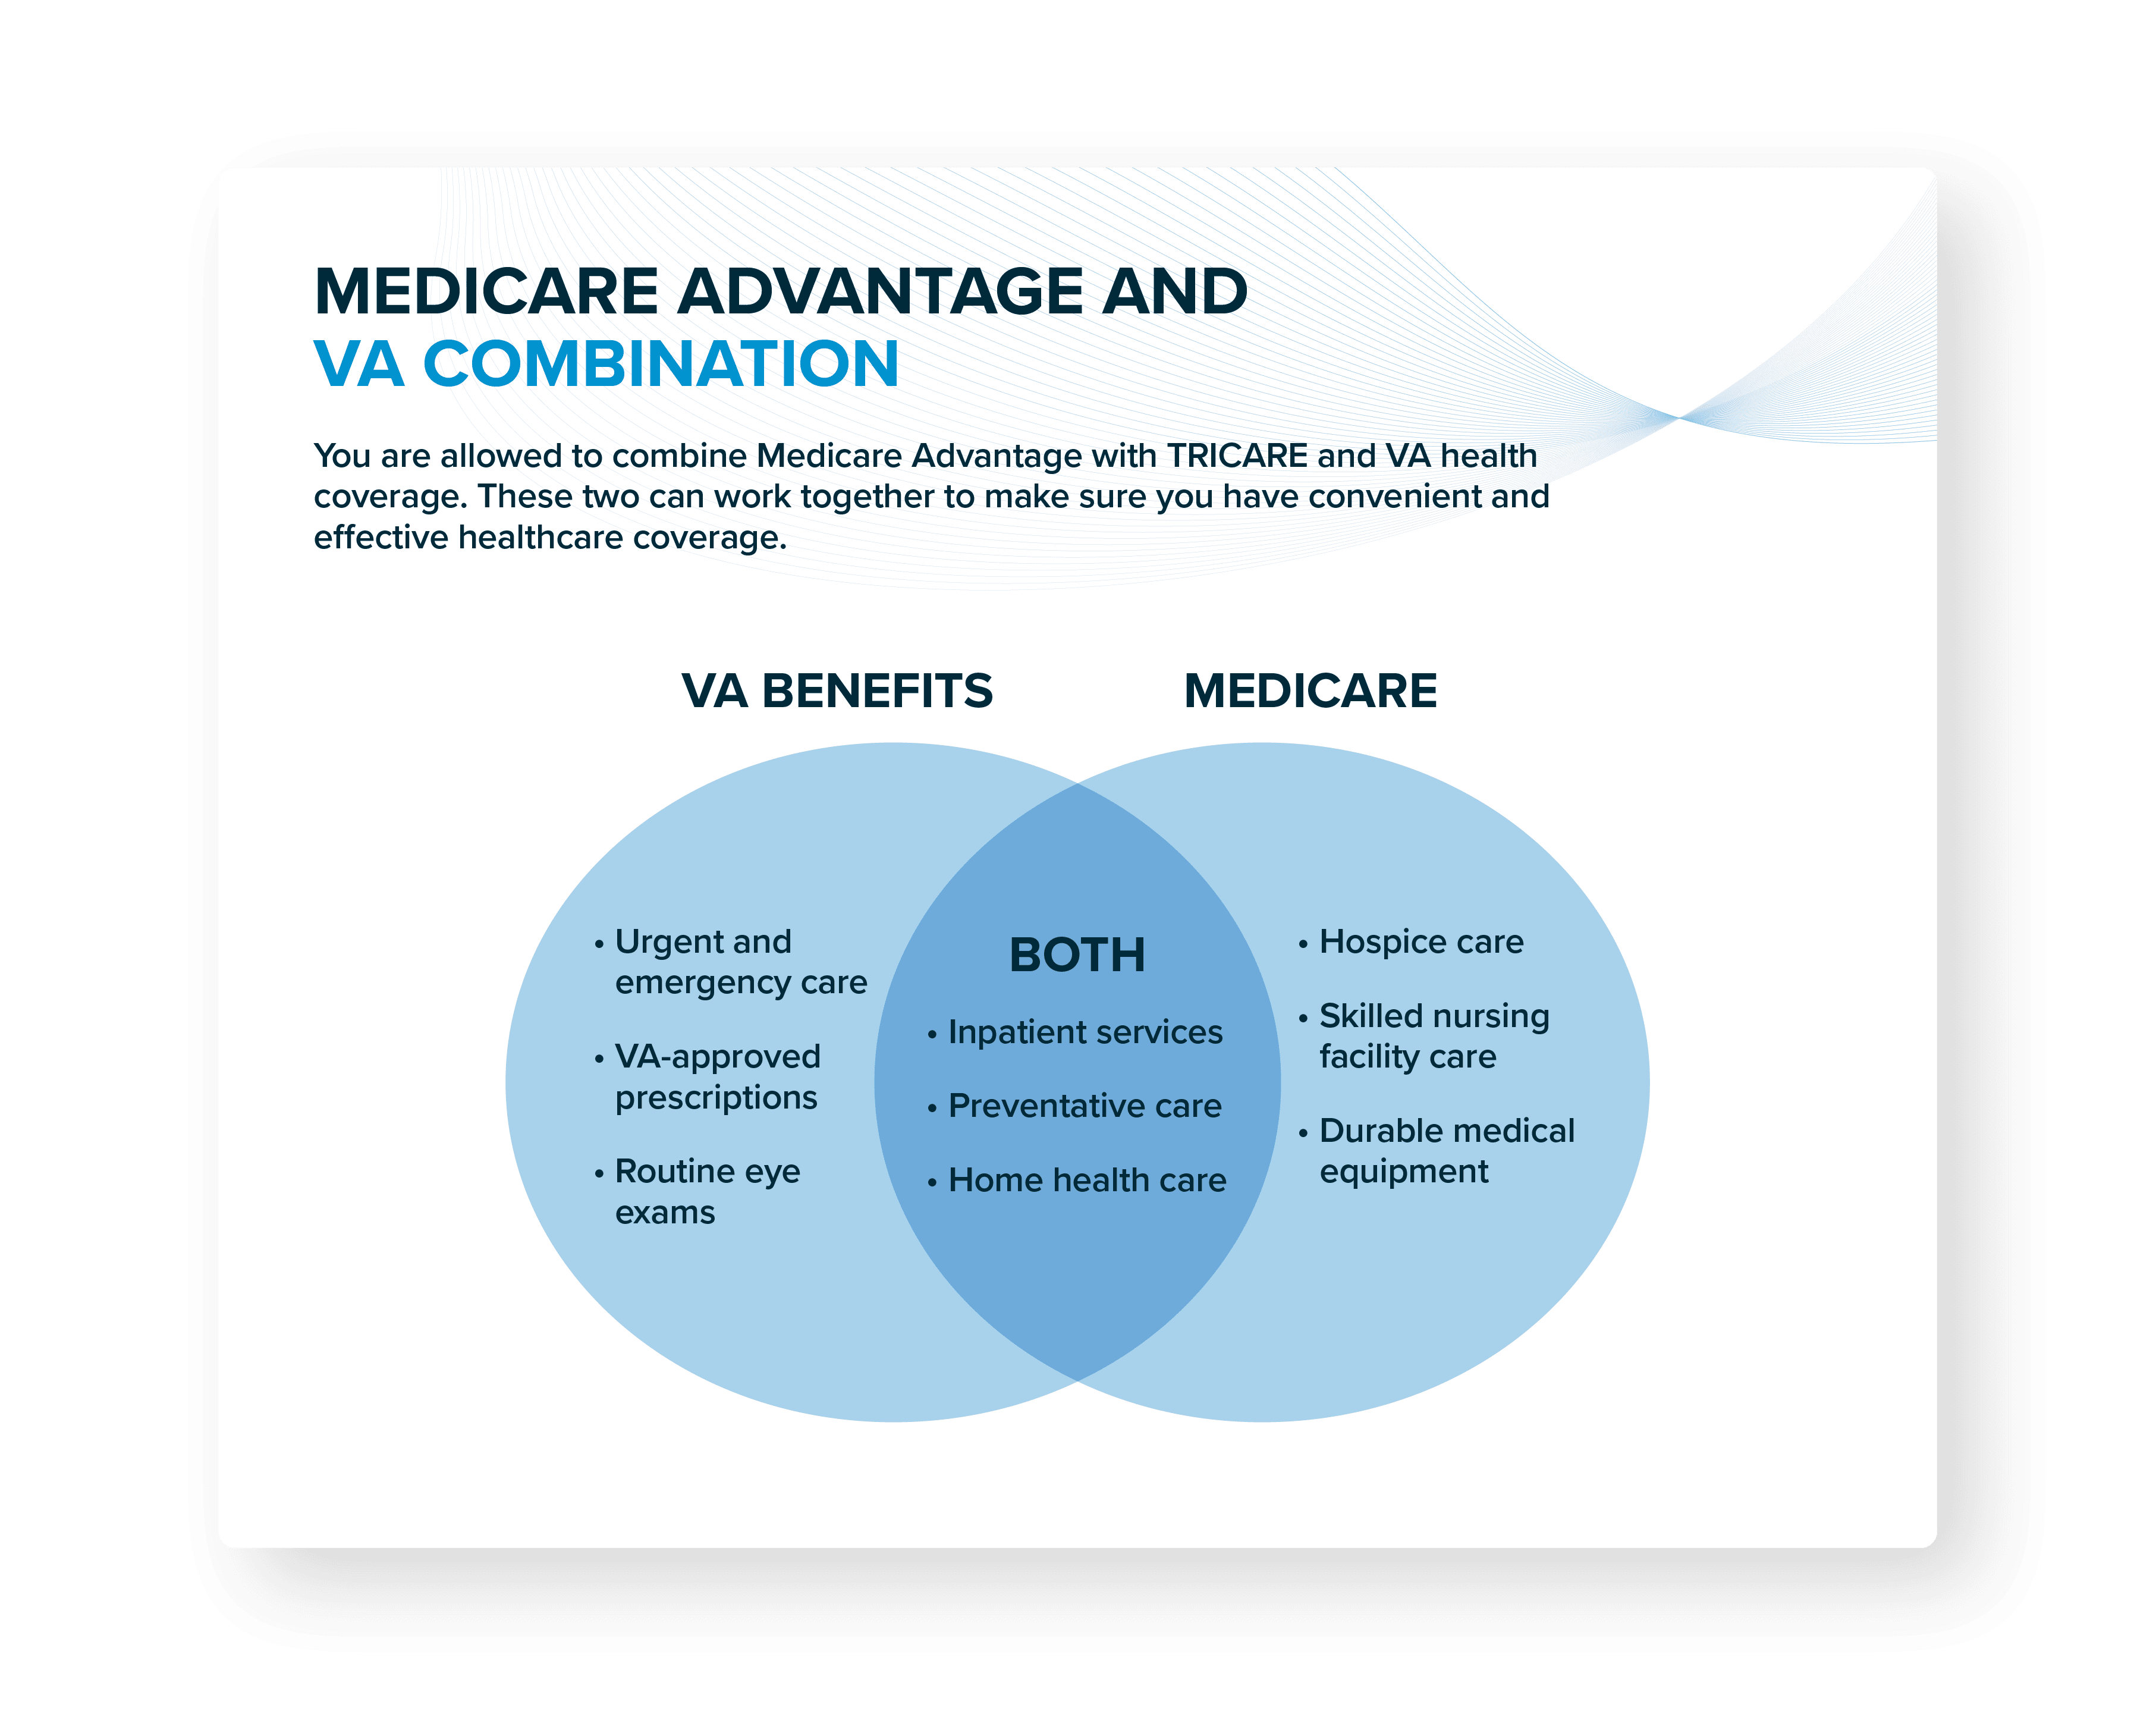 Medicare Advantage and VA Combination